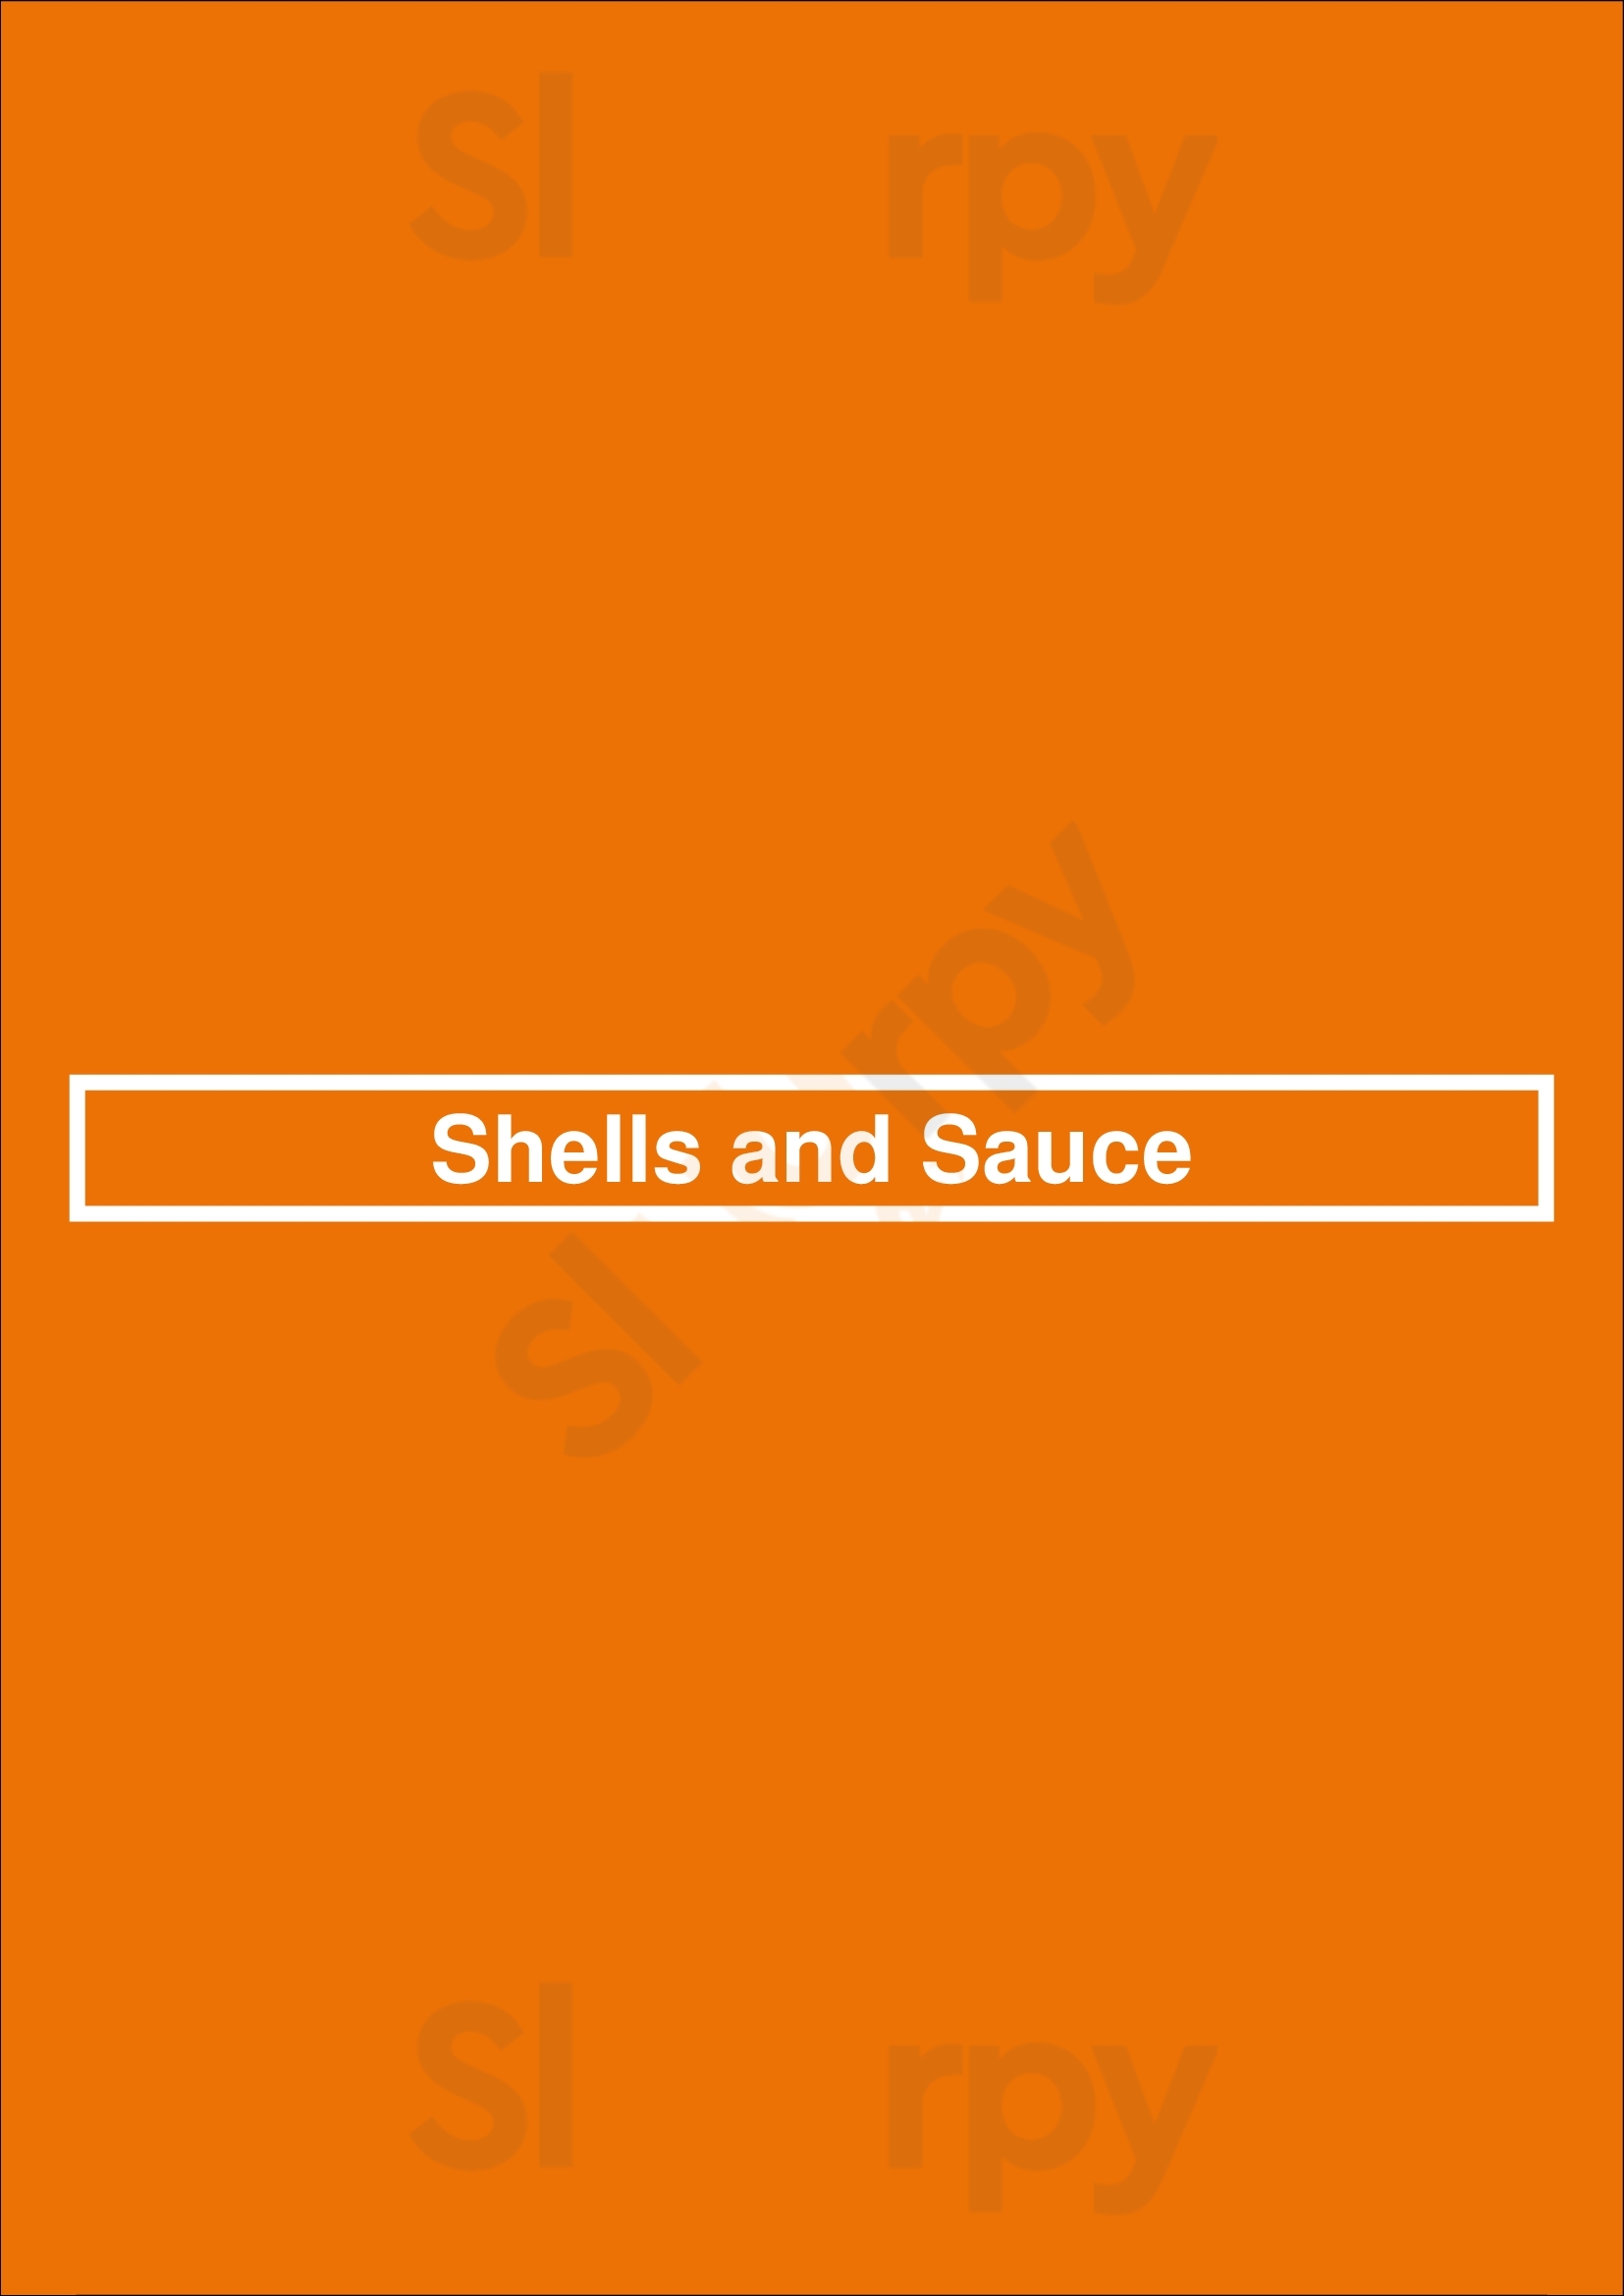 Shells And Sauce Denver Menu - 1